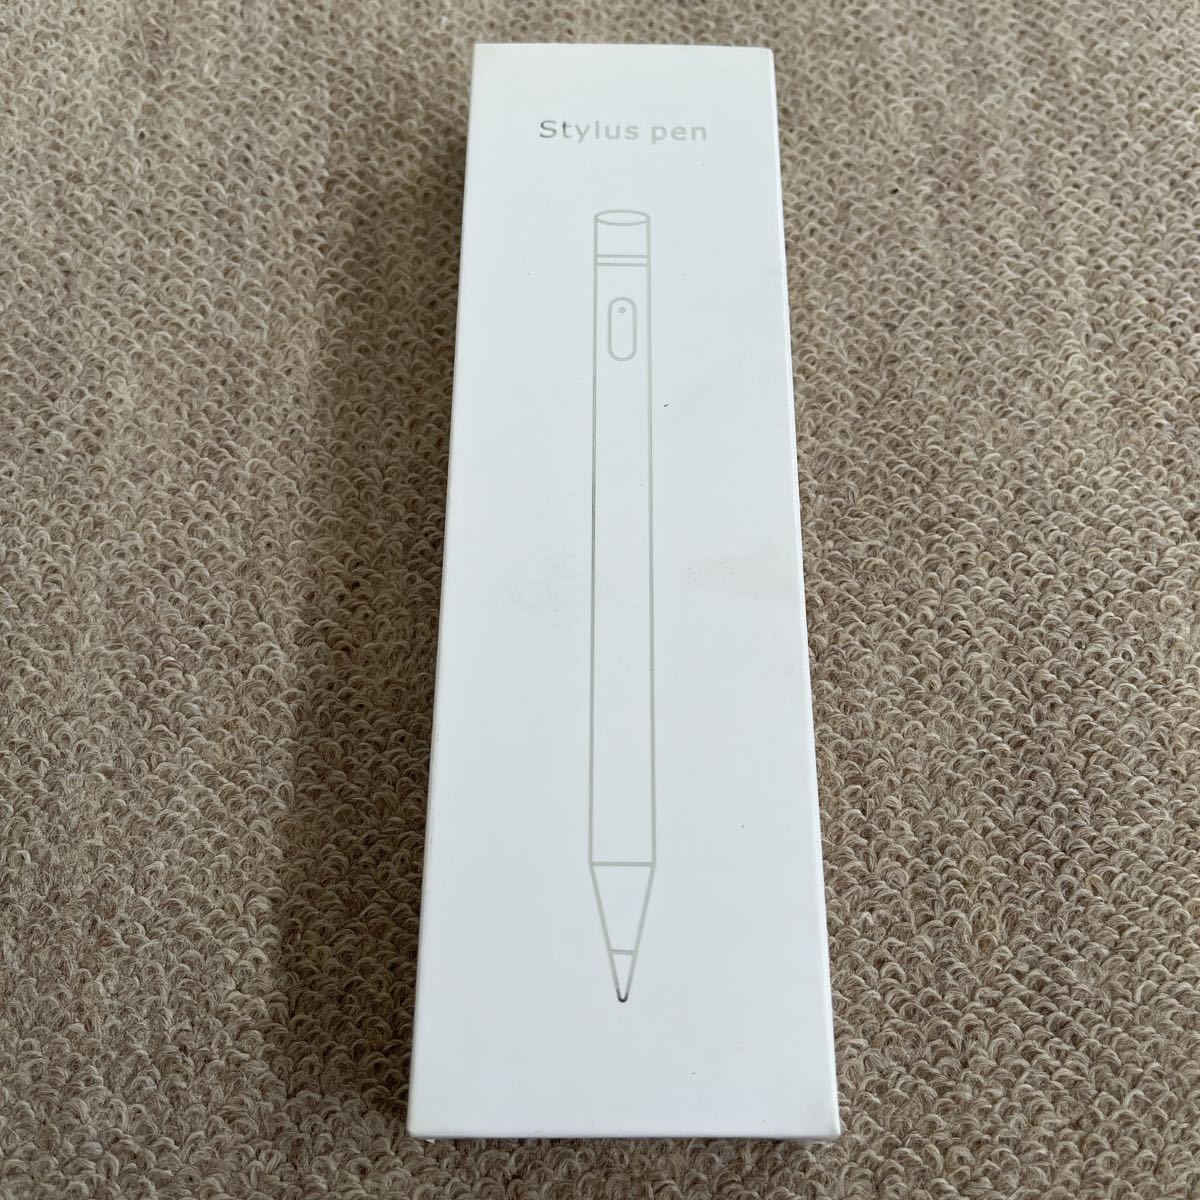 タッチペン　スライスペン　高品質　タッチパネルスマートフォン　タブレット対応